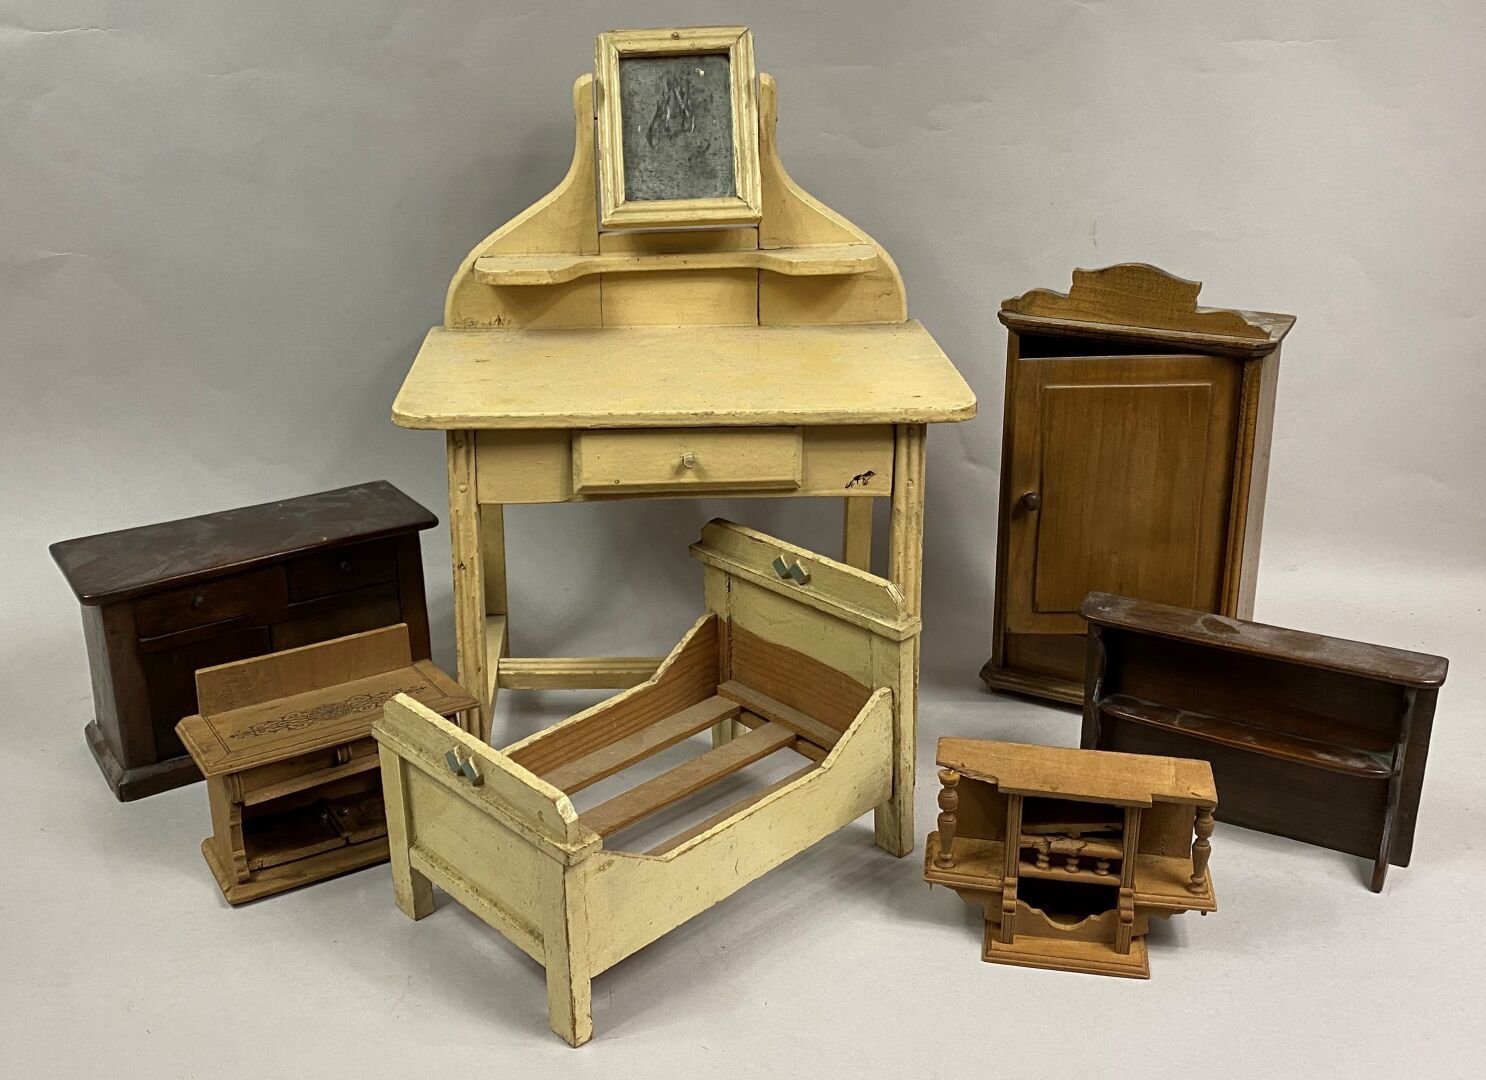 Null 一套天然和涂色的木制娃娃家具，包括一个梳妆台，一张床，一个衣柜和一个餐具柜。